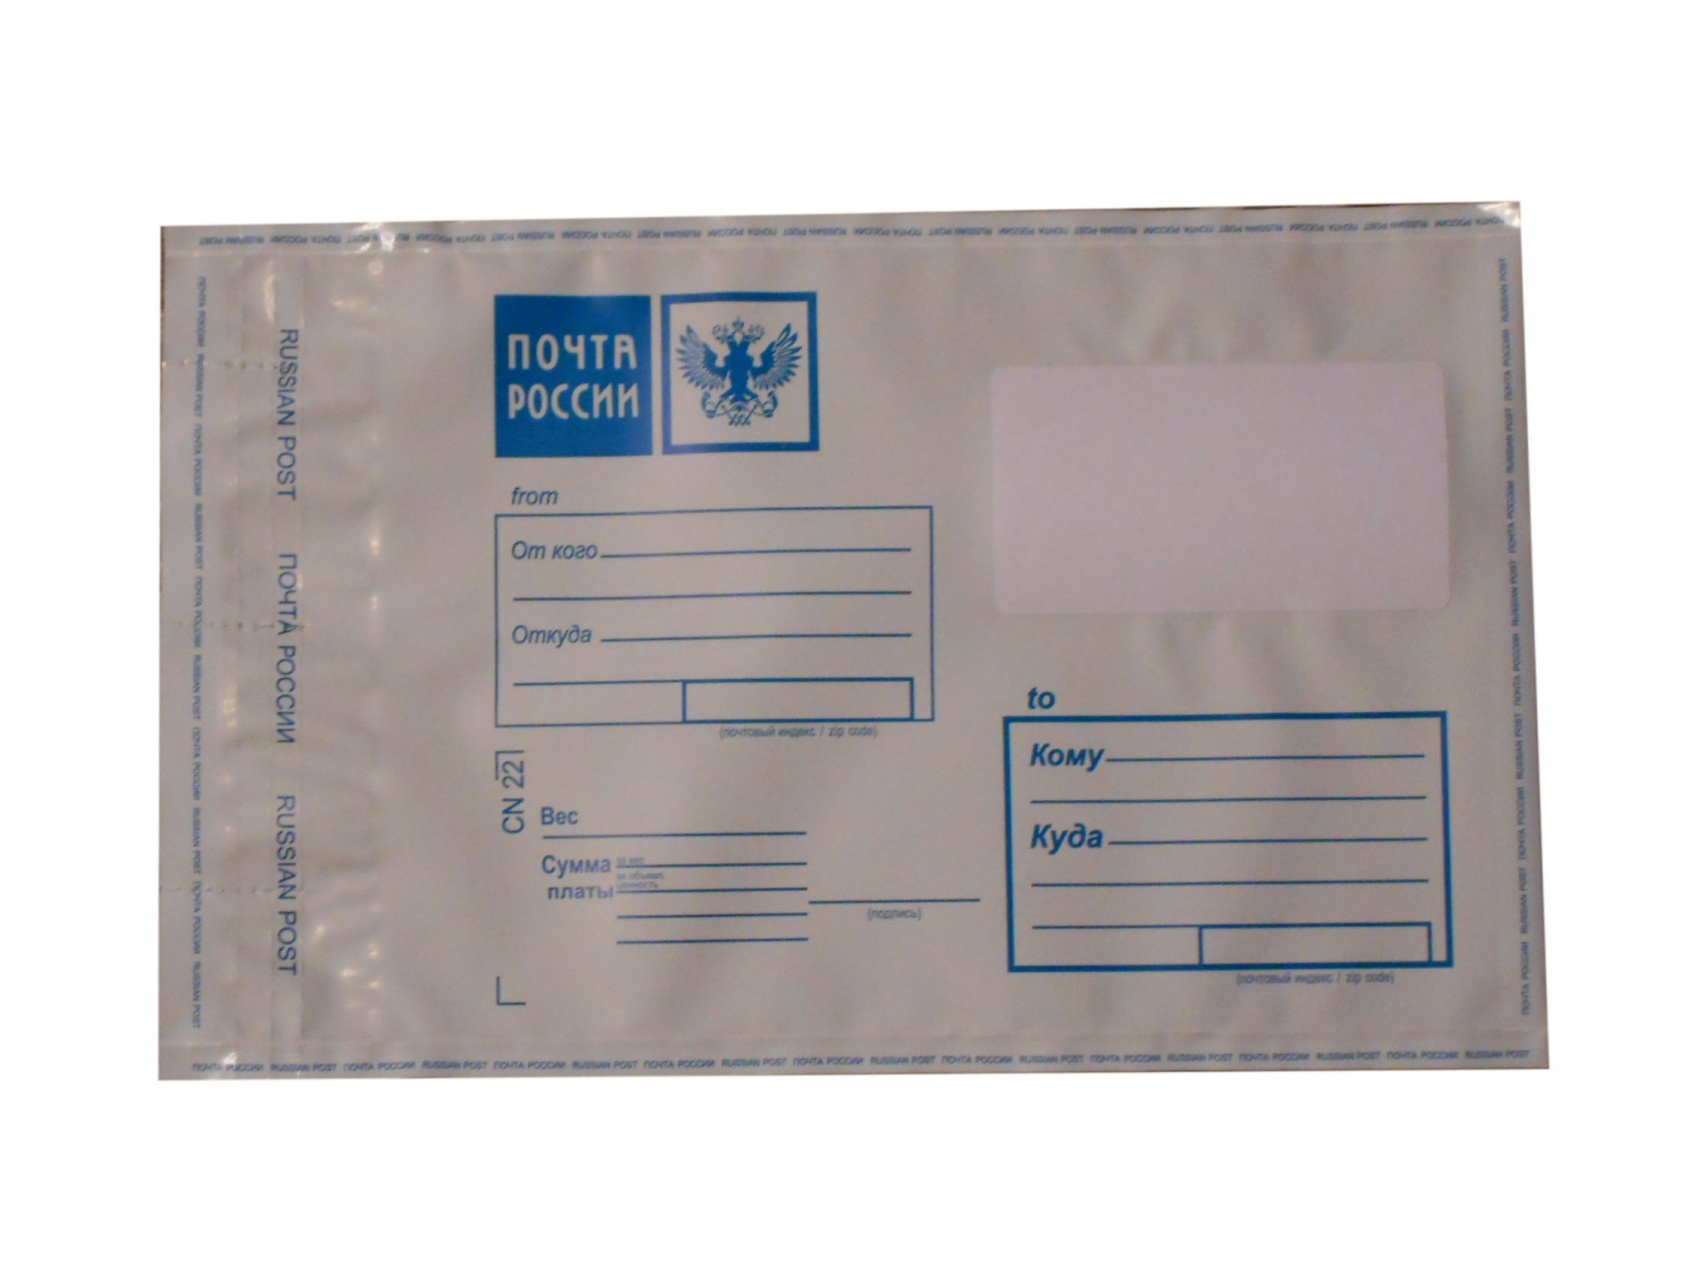 Бандероль 2. Пакет почтовый 500х545 + 45. Печать на конверте посылке. Конверт почта России. Почтовые пакеты с печатью.